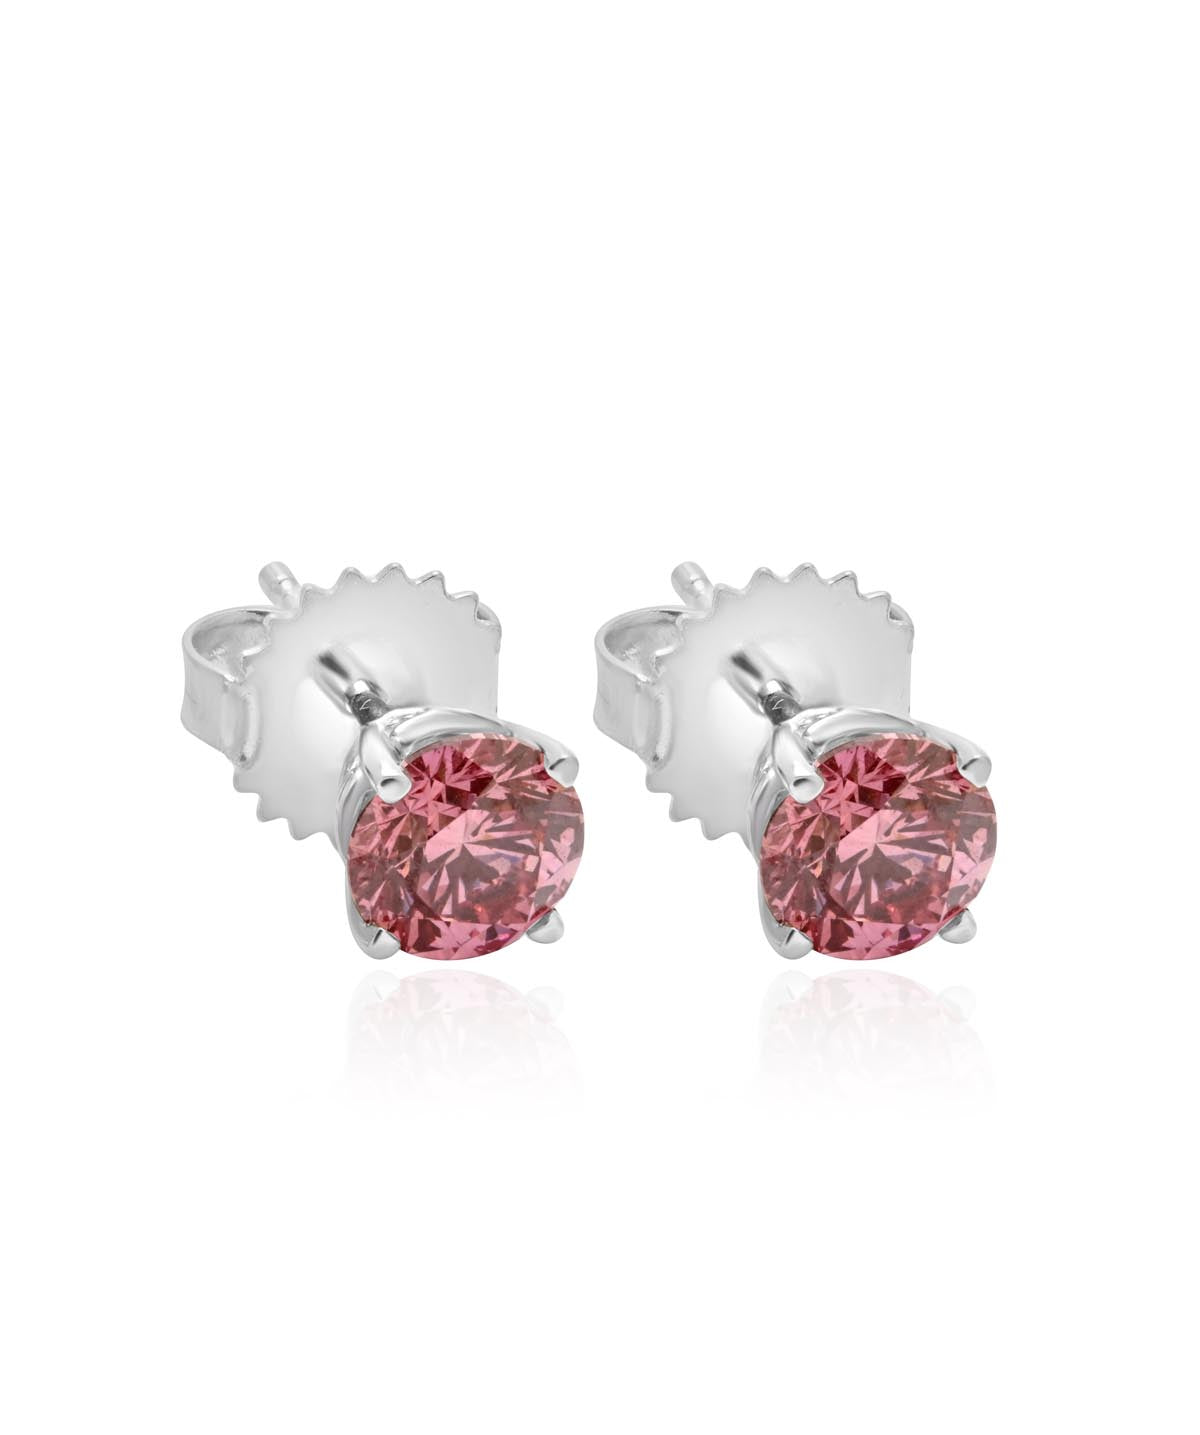 14K White Gold Fancy Pink Lab Grown Diamond Stud Earrings